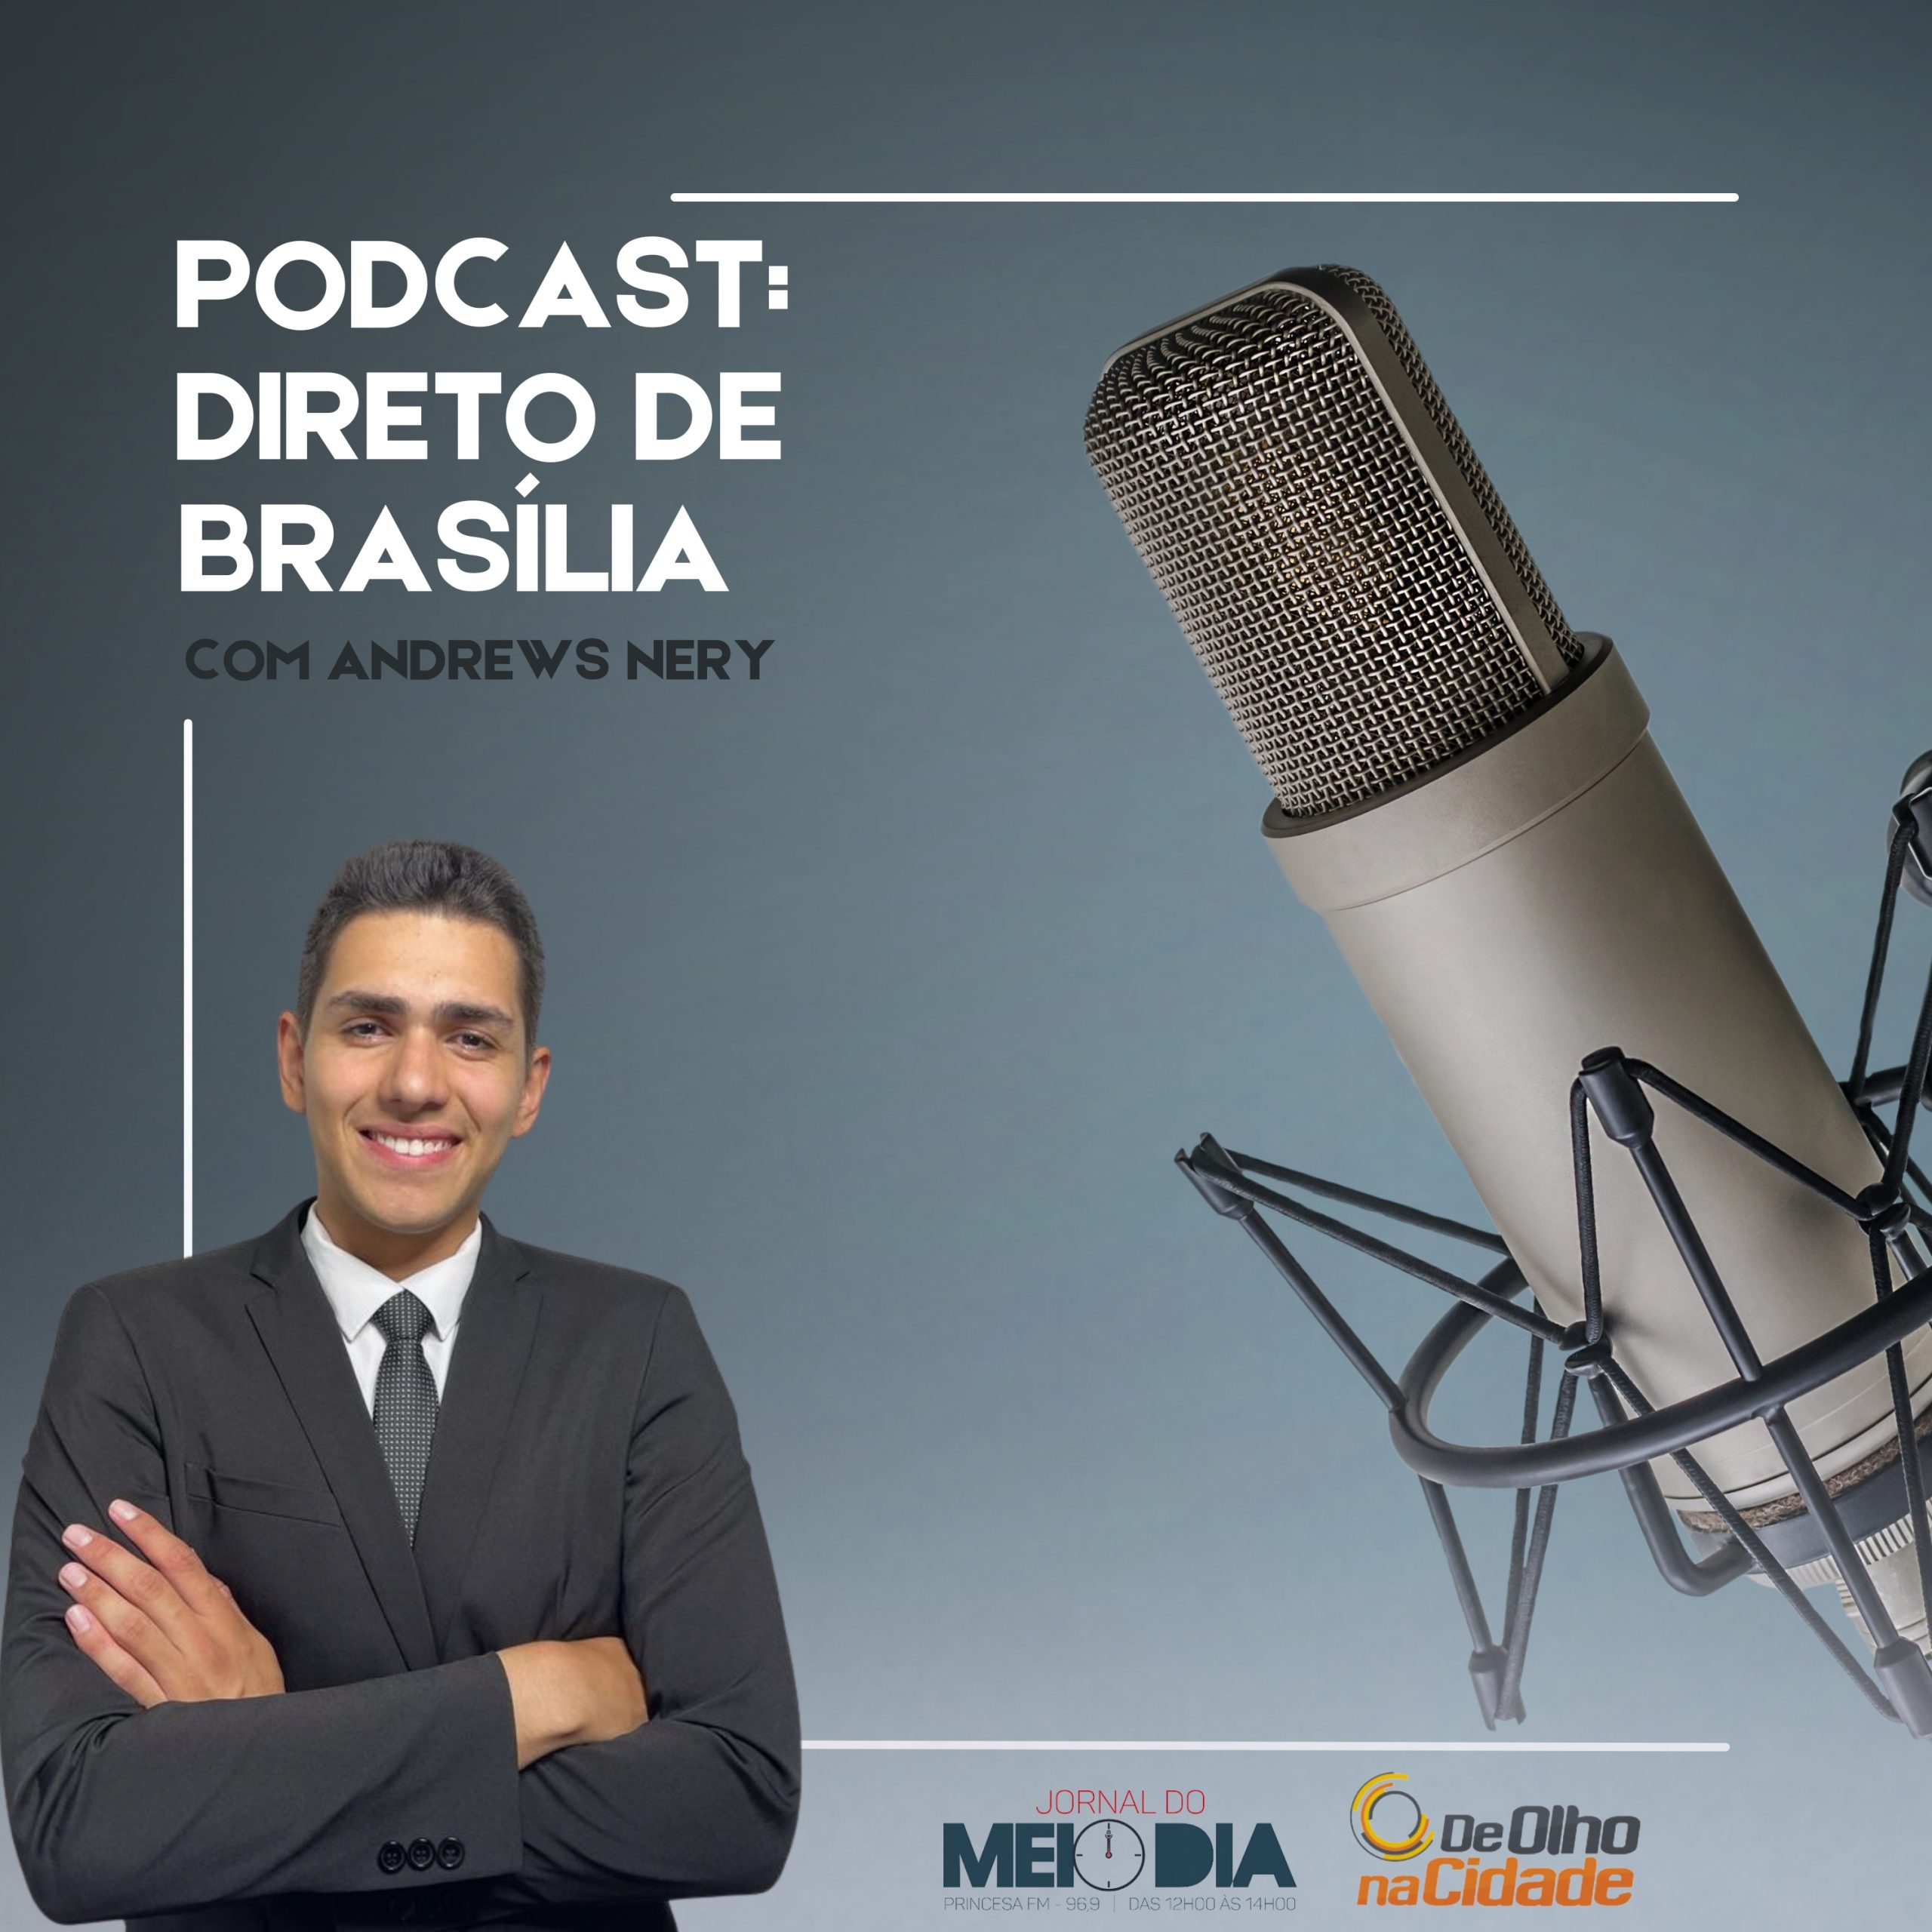 Podcast Direto de Brasília com Andrews Nery: Haddad confirma intenção de financiar exportações na Argentina